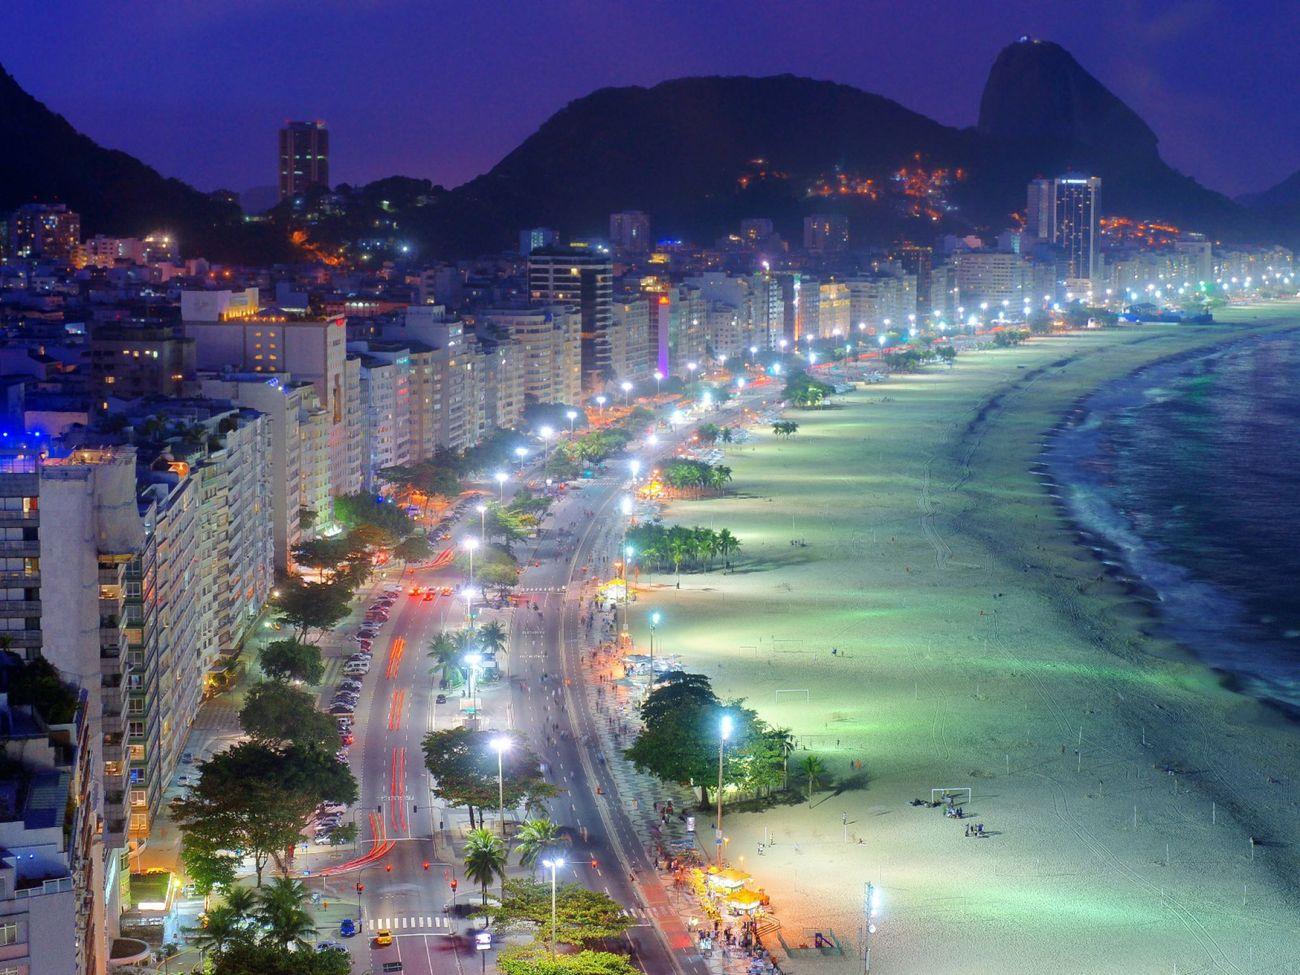 Rio, Copacabana